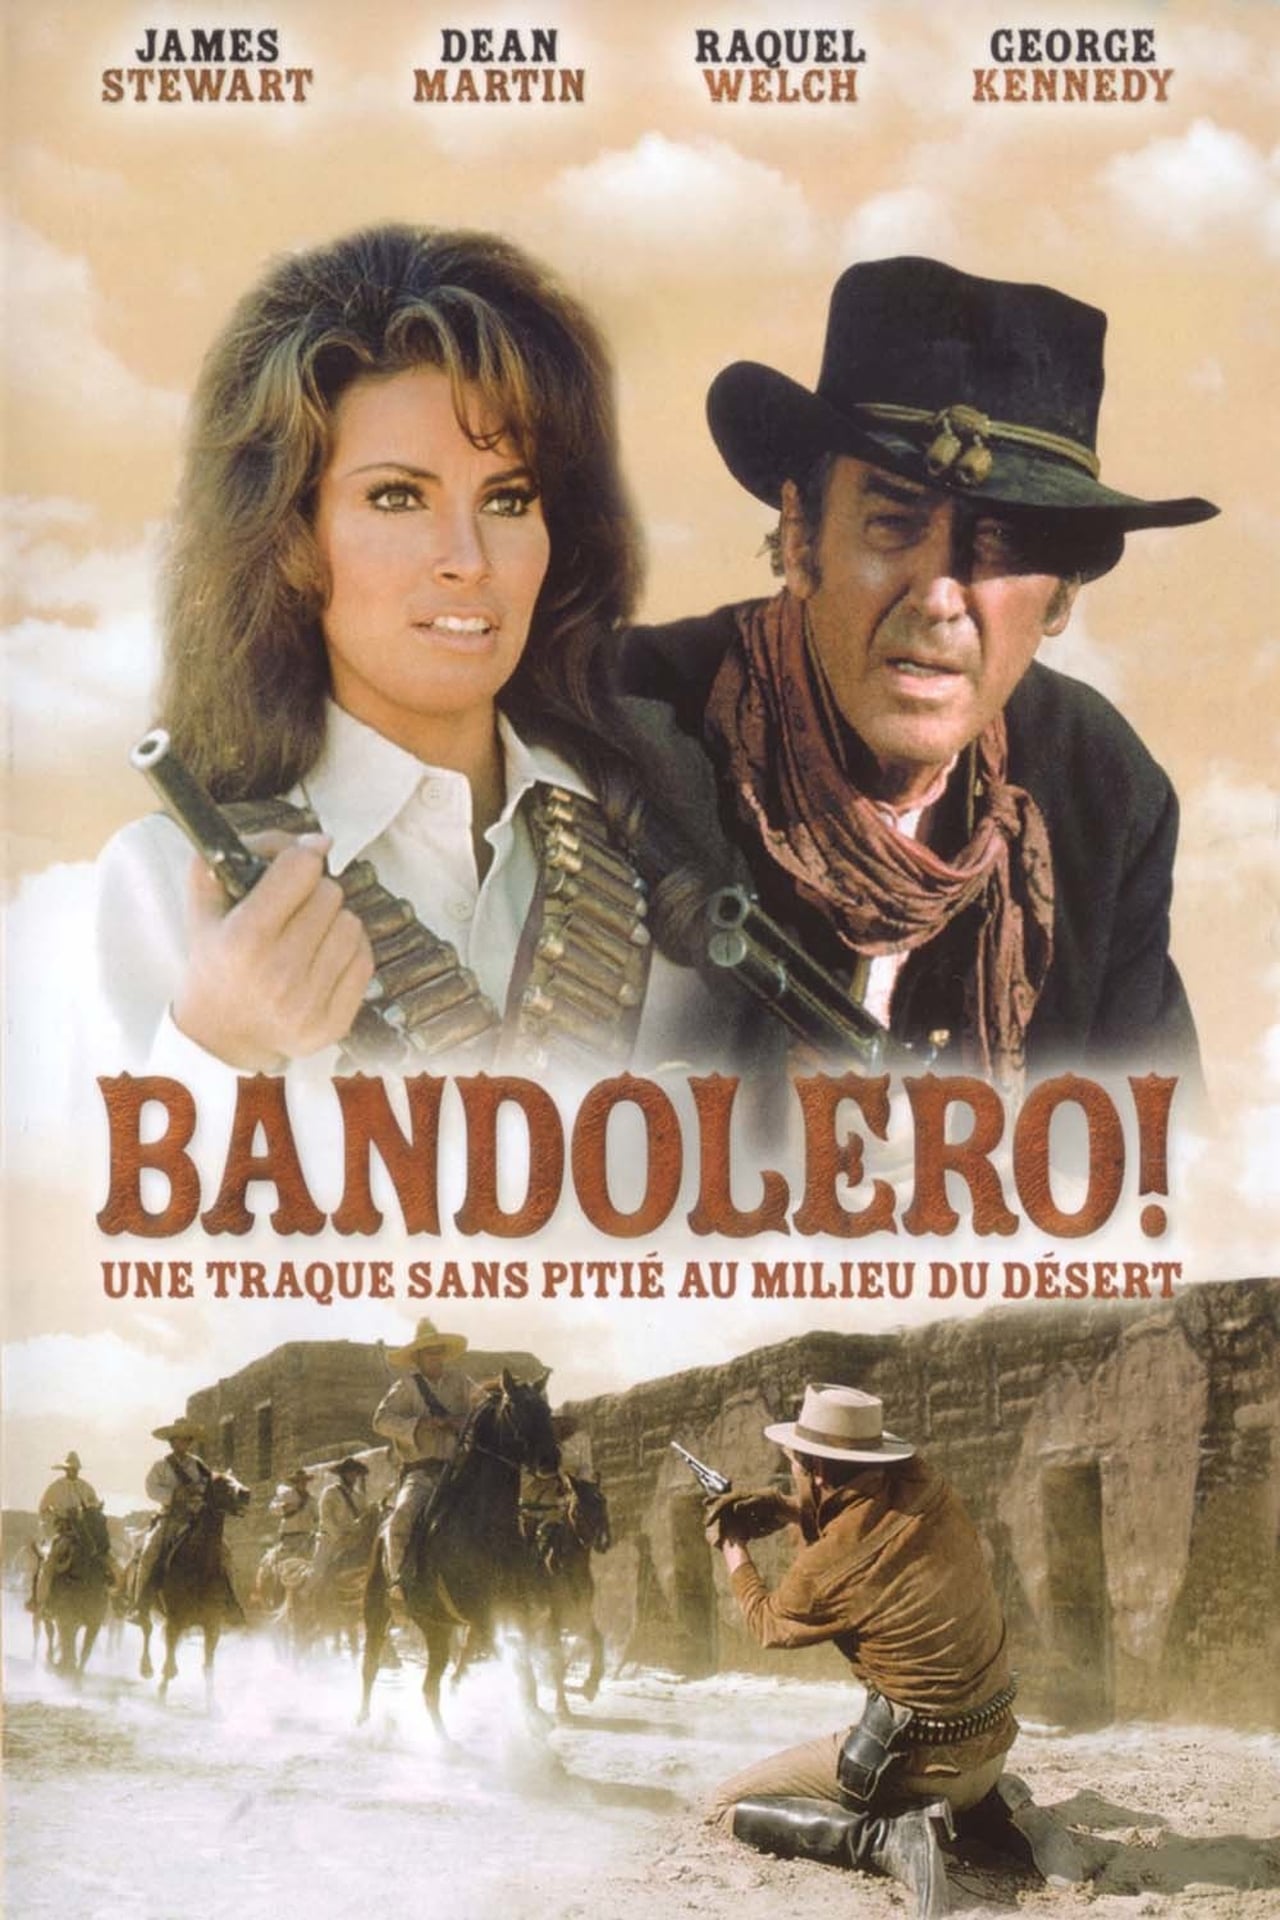 Включи bandoleros. Бандолеро 1968. Бандолеро! / Bandolero! (1968). Бандолеро! (Bandolero!) Постеры.